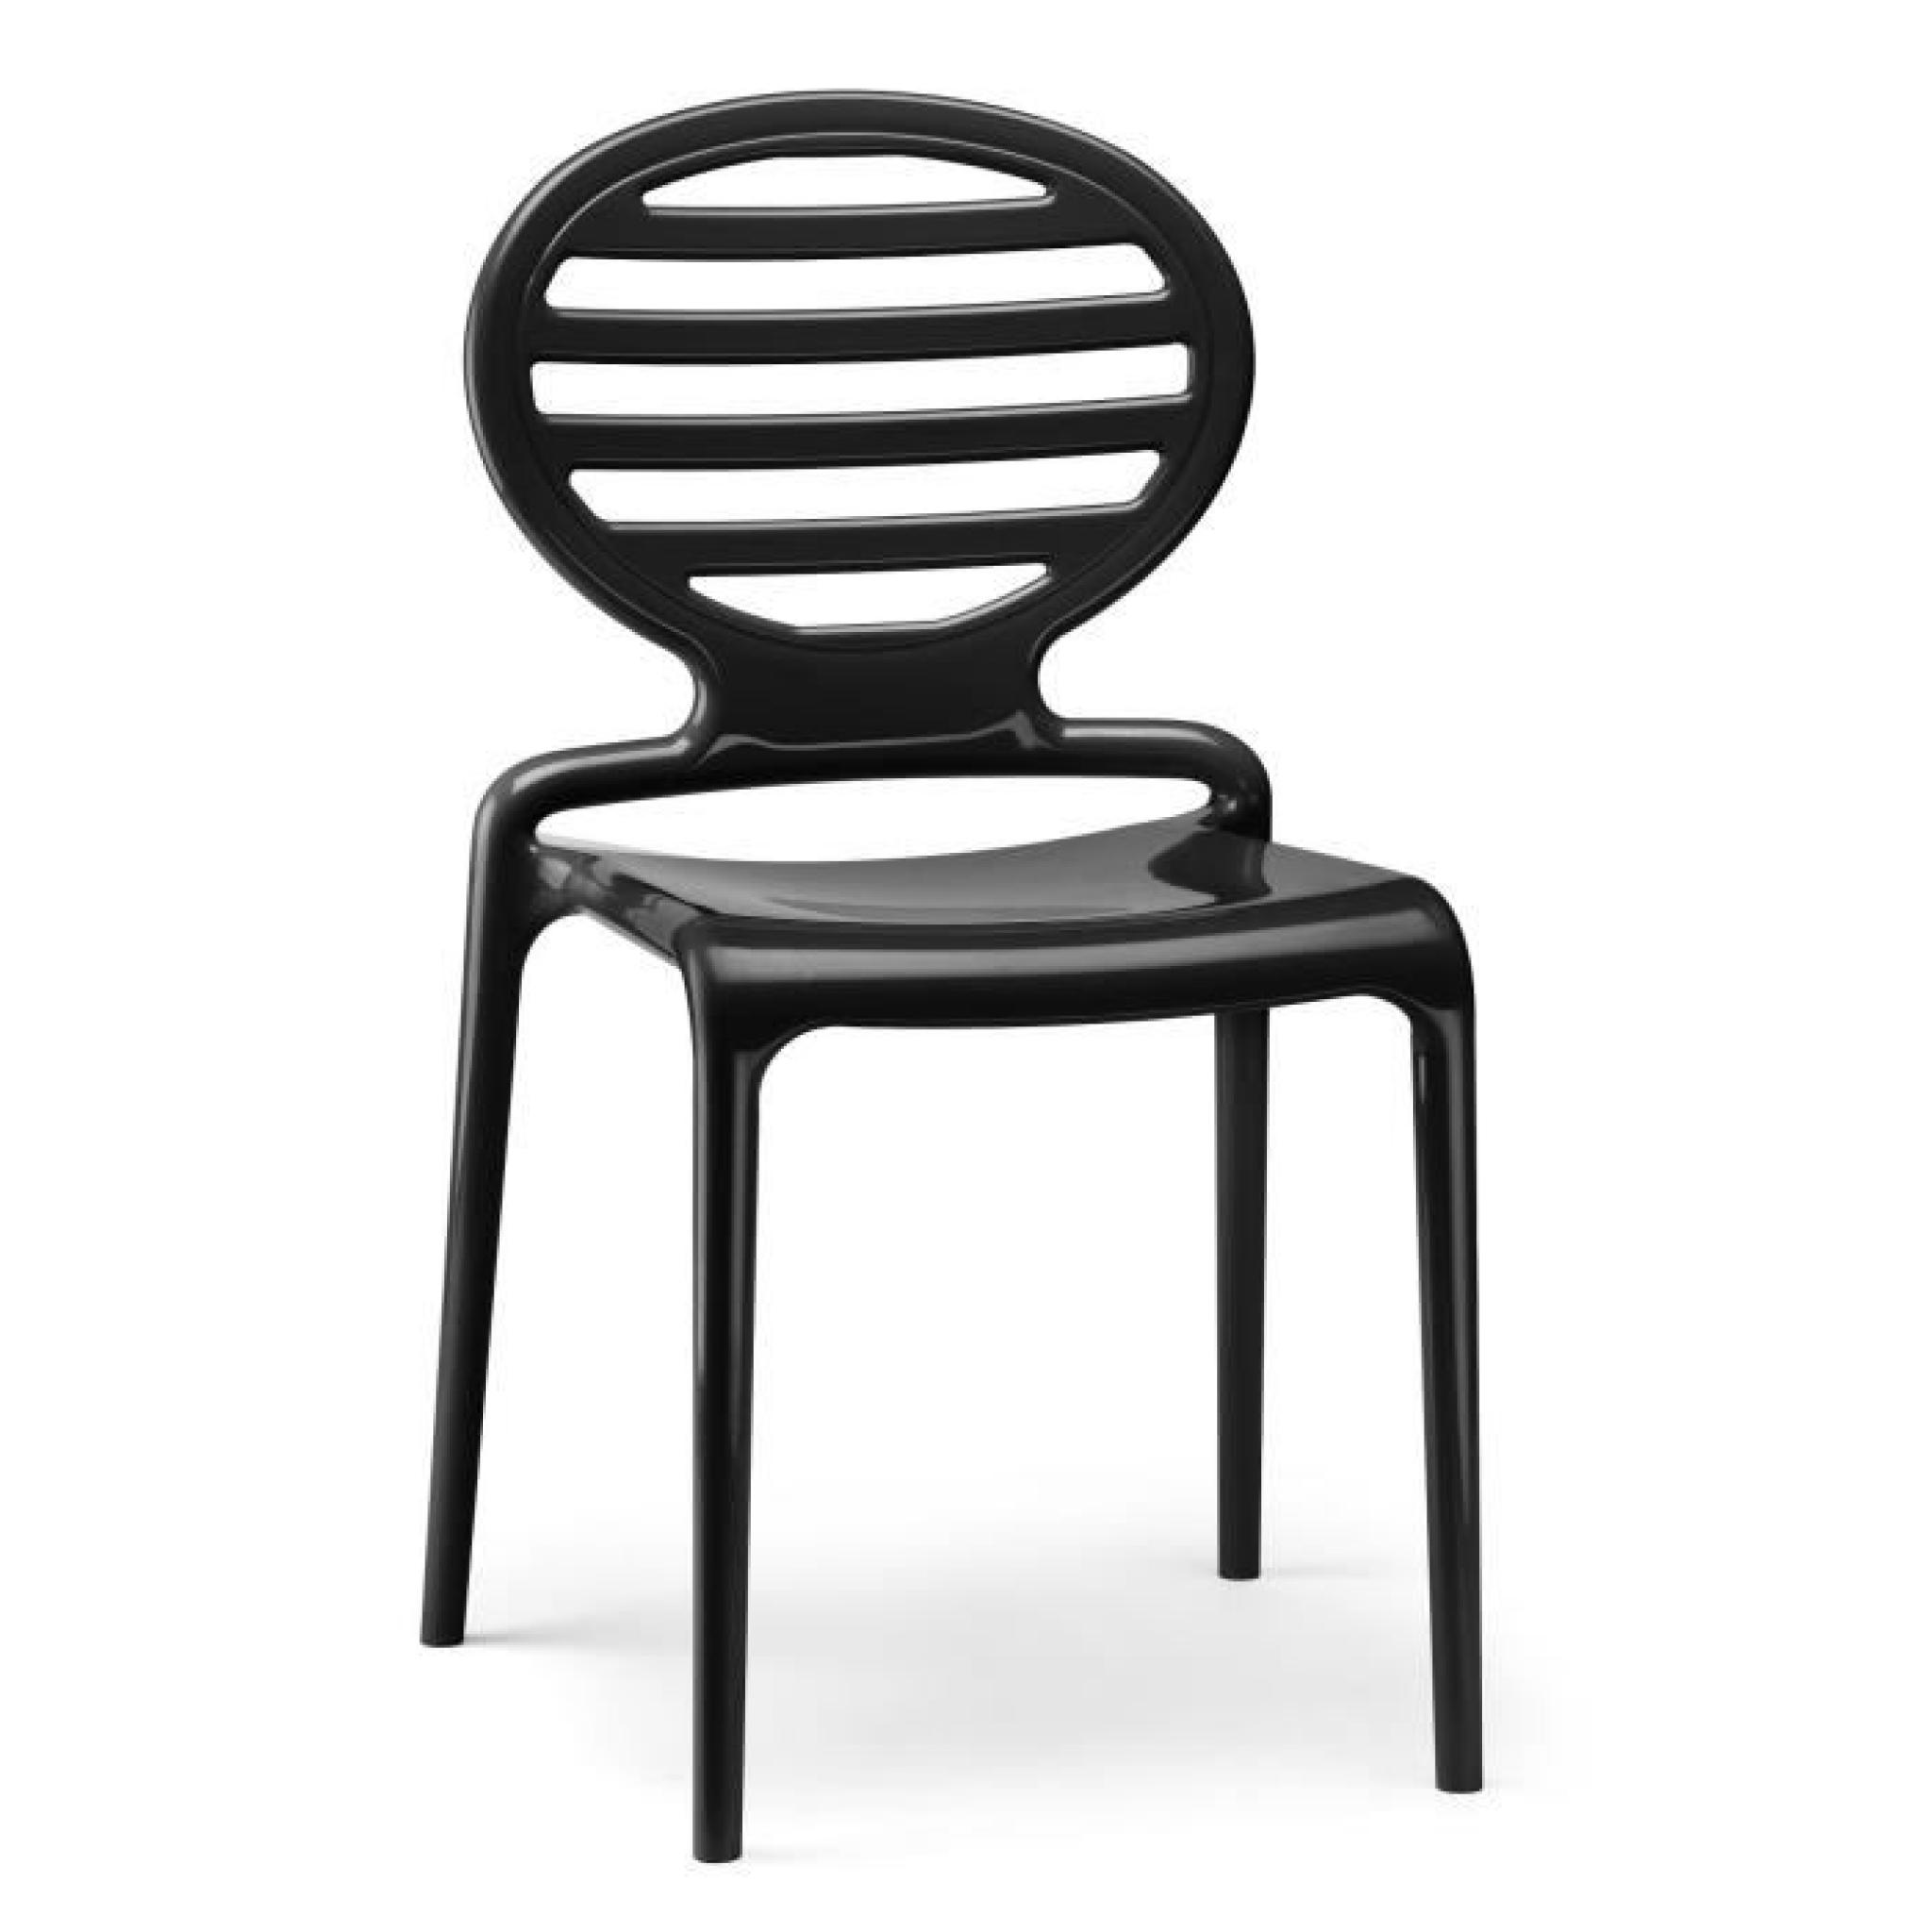 Chaise noire glossy design - COKKA CHAIR noire - deco scab